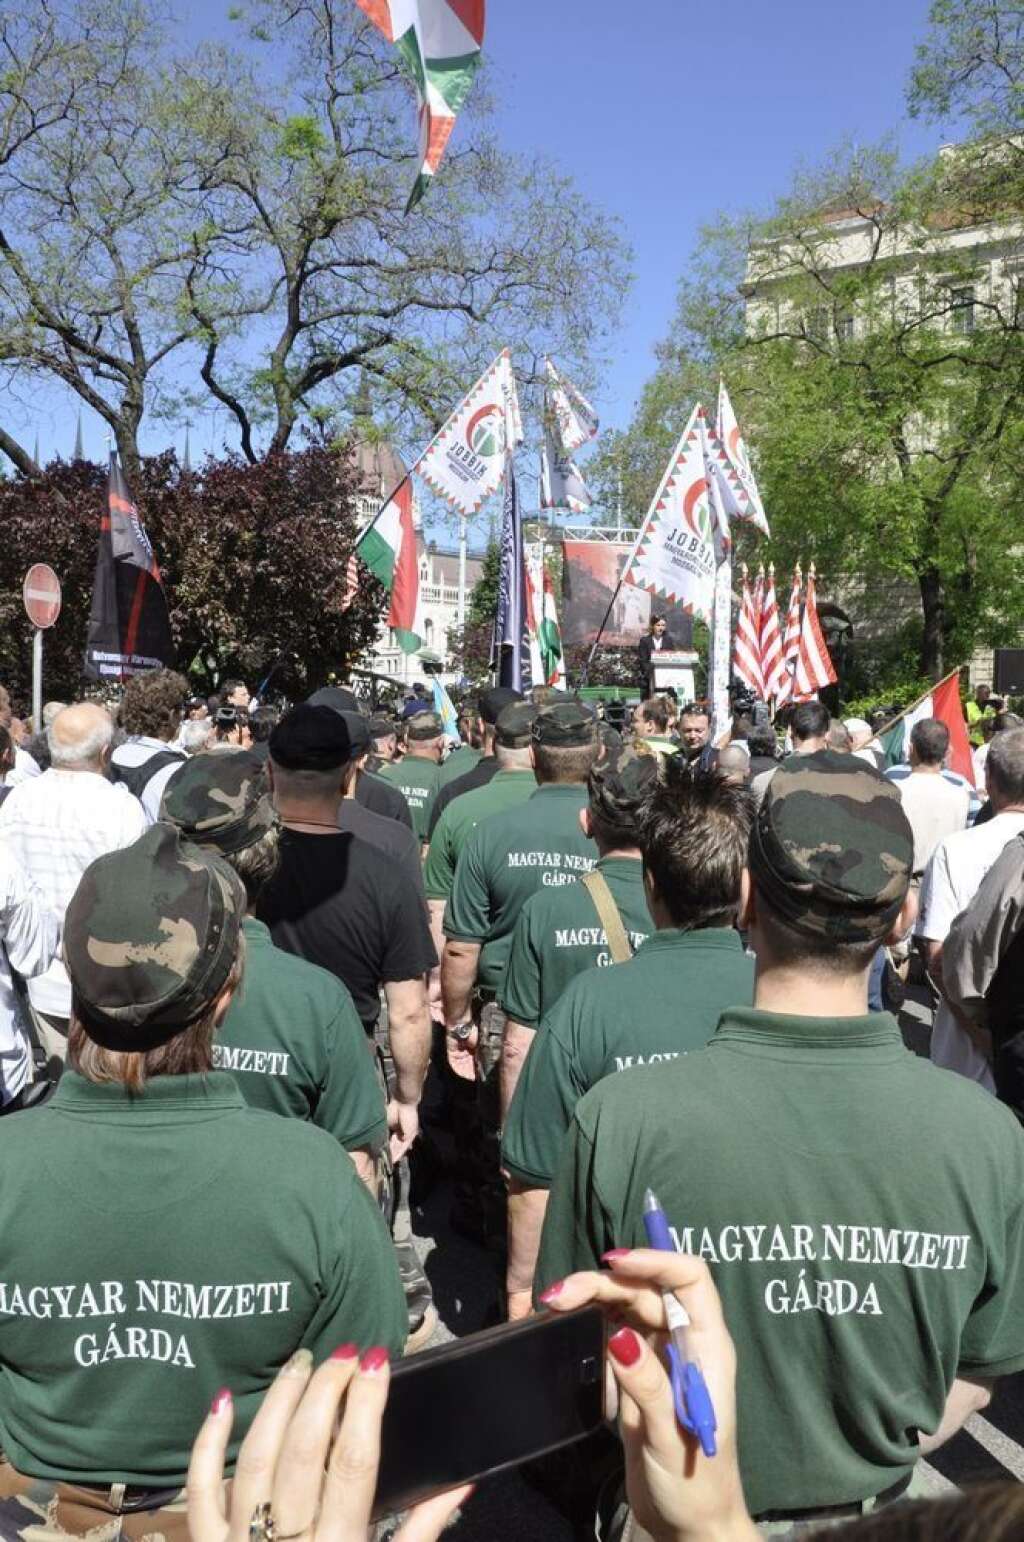 Jobbik, le Mouvement pour une meilleure Hongrie - Parti politique hongrois d'extrême droite fondé en 2003, associé à une milice violente (la "Garde hongroise"), Jobbik se veut anti-avortement, anti-européen, anti-establishment et anti-immigration. En 2010, le parti a remporté 47 sièges au Parlement. Jobbik dispose de 3 sièges au Parlement européen.